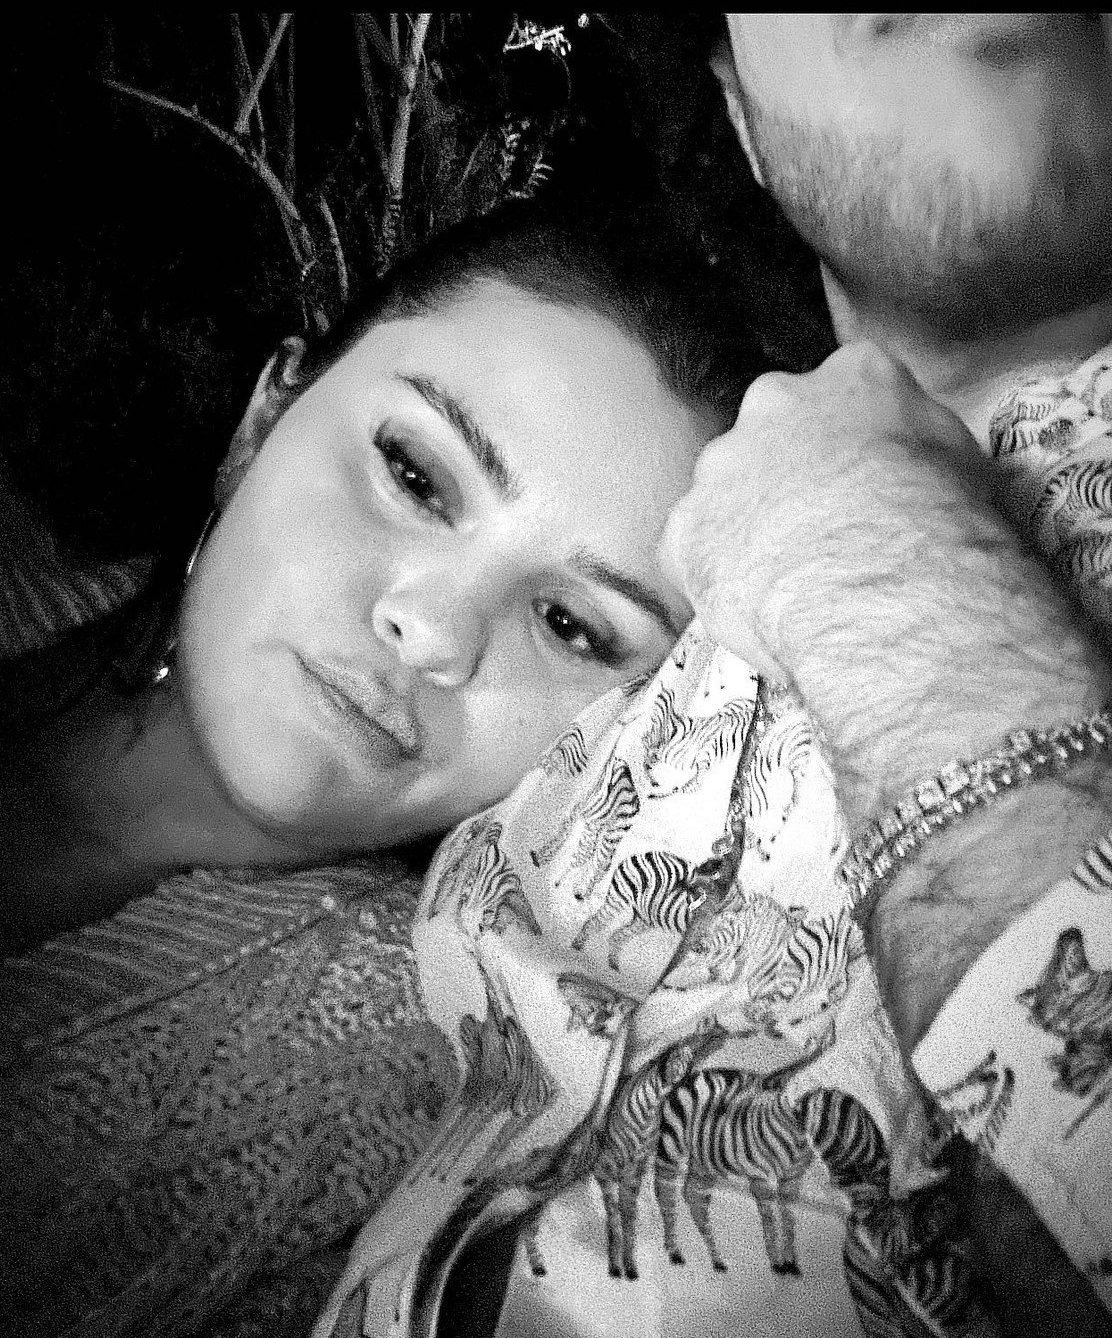 Selena Gomez shares new photo with boyfriend Benny Blanco